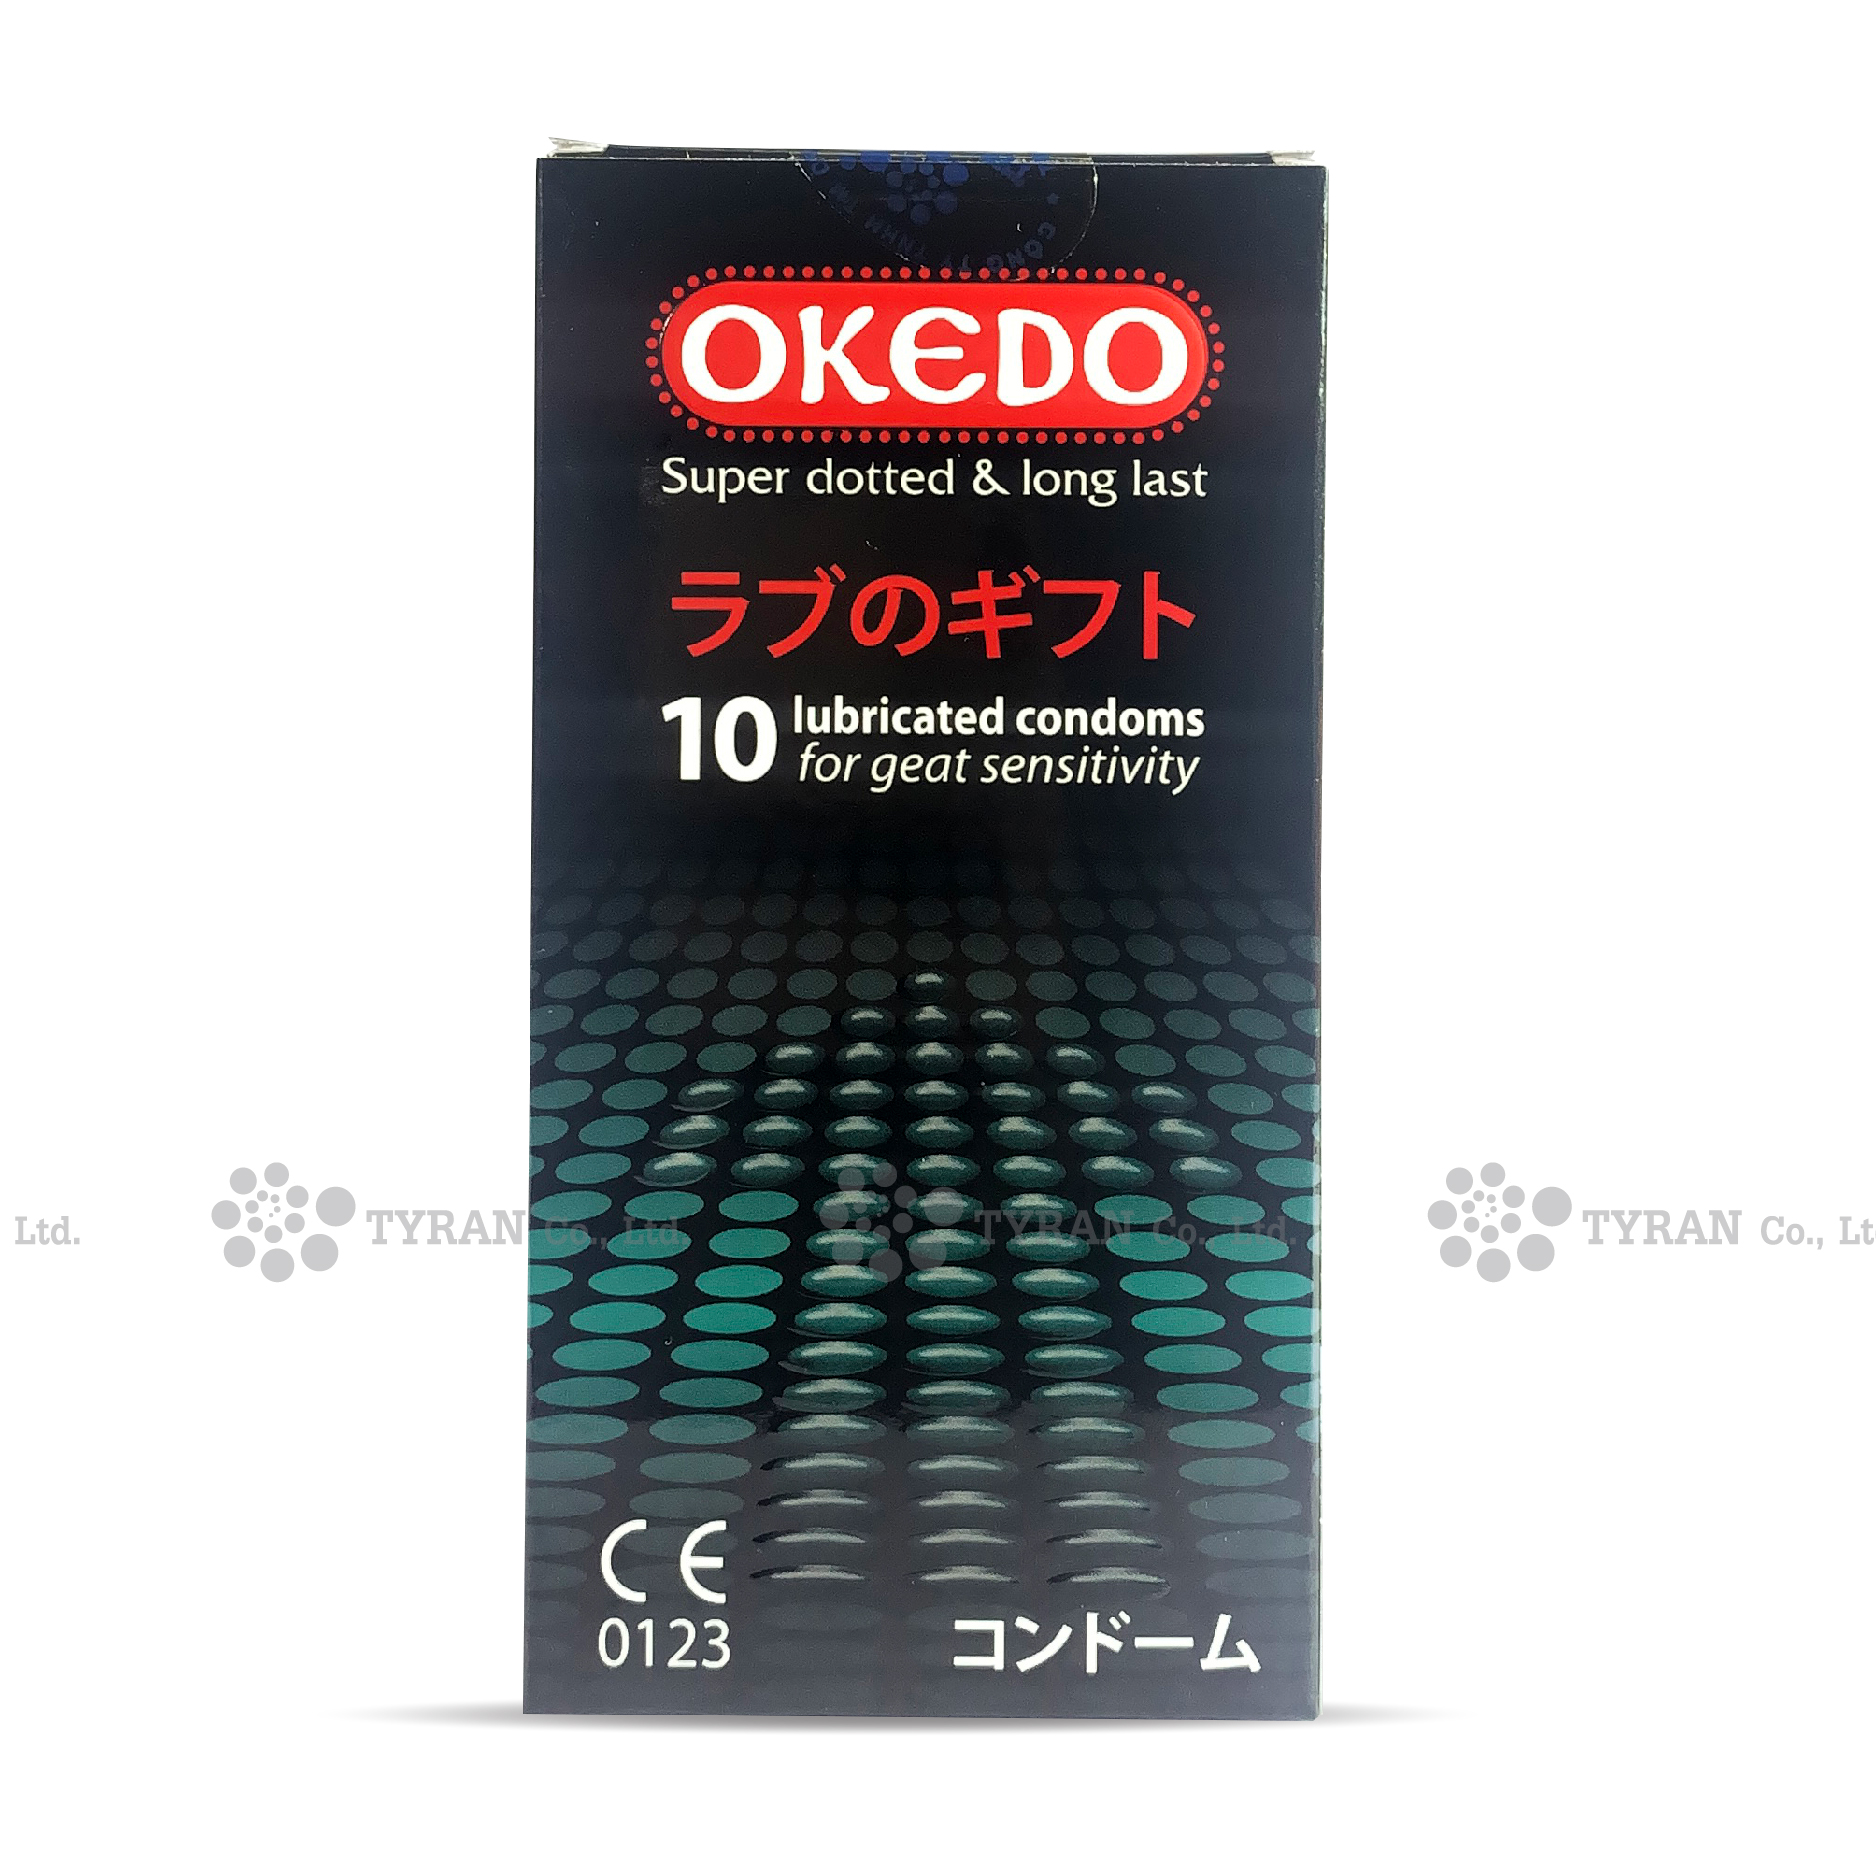 Bao cao su OKEDO (hộp 10 cái)